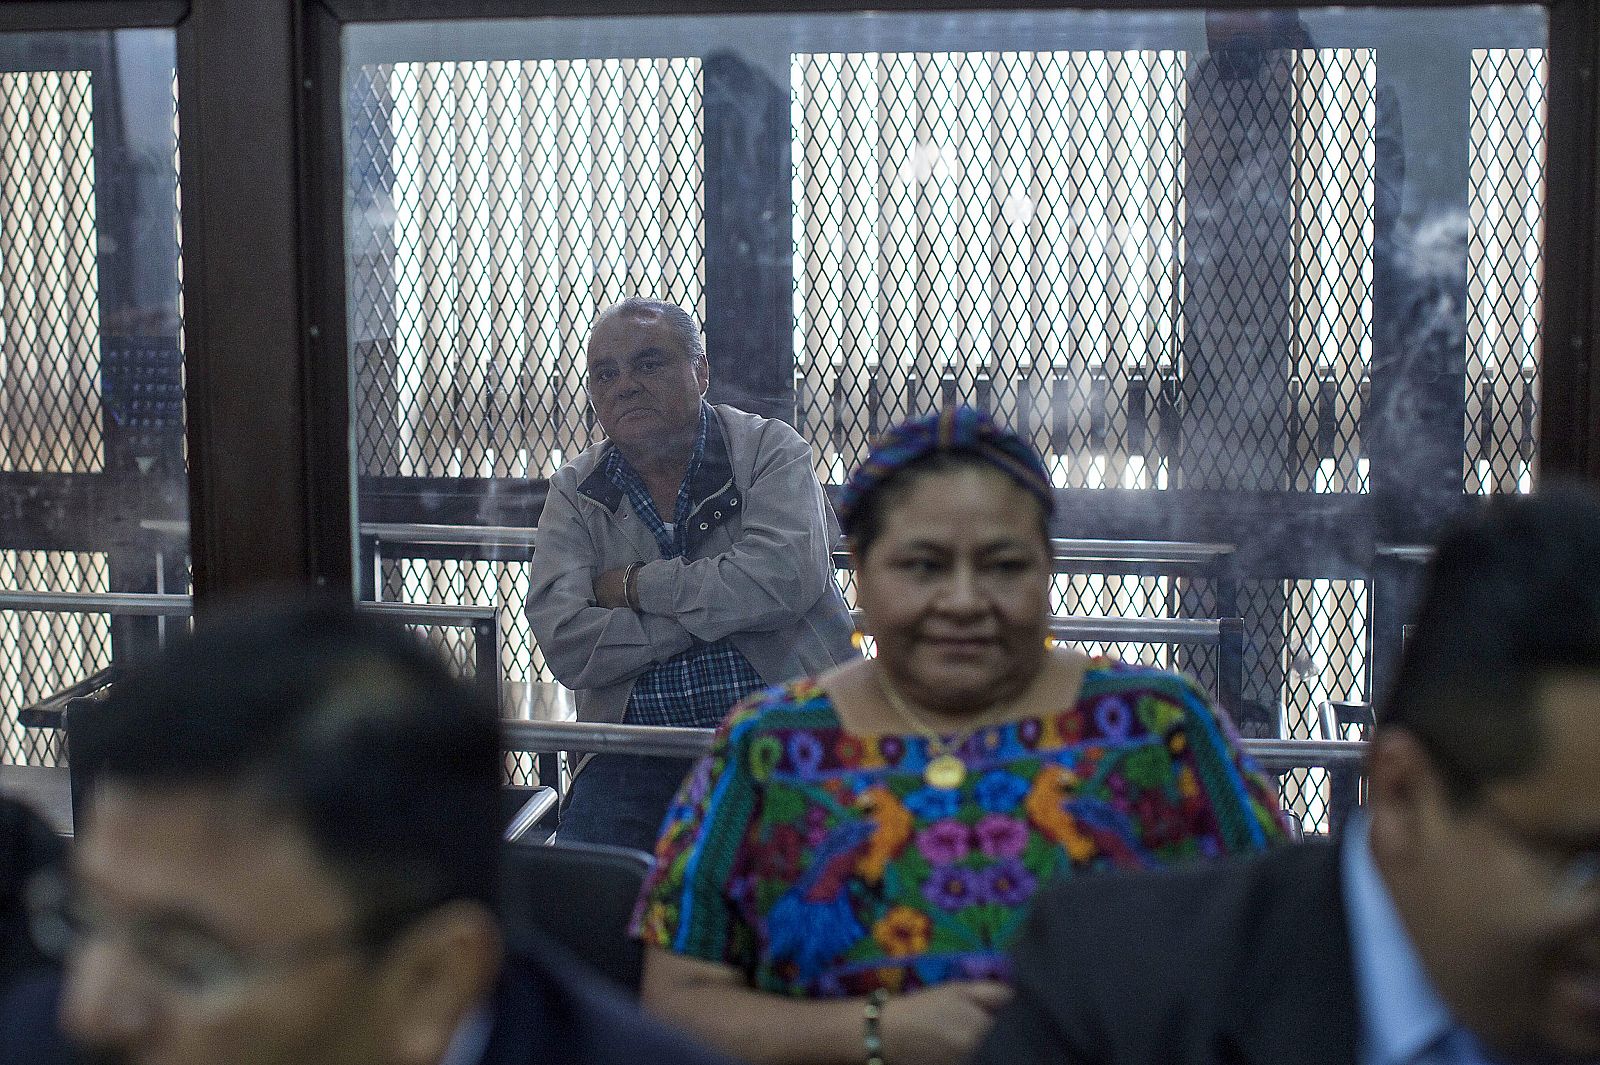 La premio Nobel de Paz 1992, Rigoberta Menchu (frente), asiste a una audiencia del juicio contra el exjefe policial de Guatemala Pedro García Arredondo (atrás) el 9 de enero, por el incendio de la Embajada de España en enero de 1980